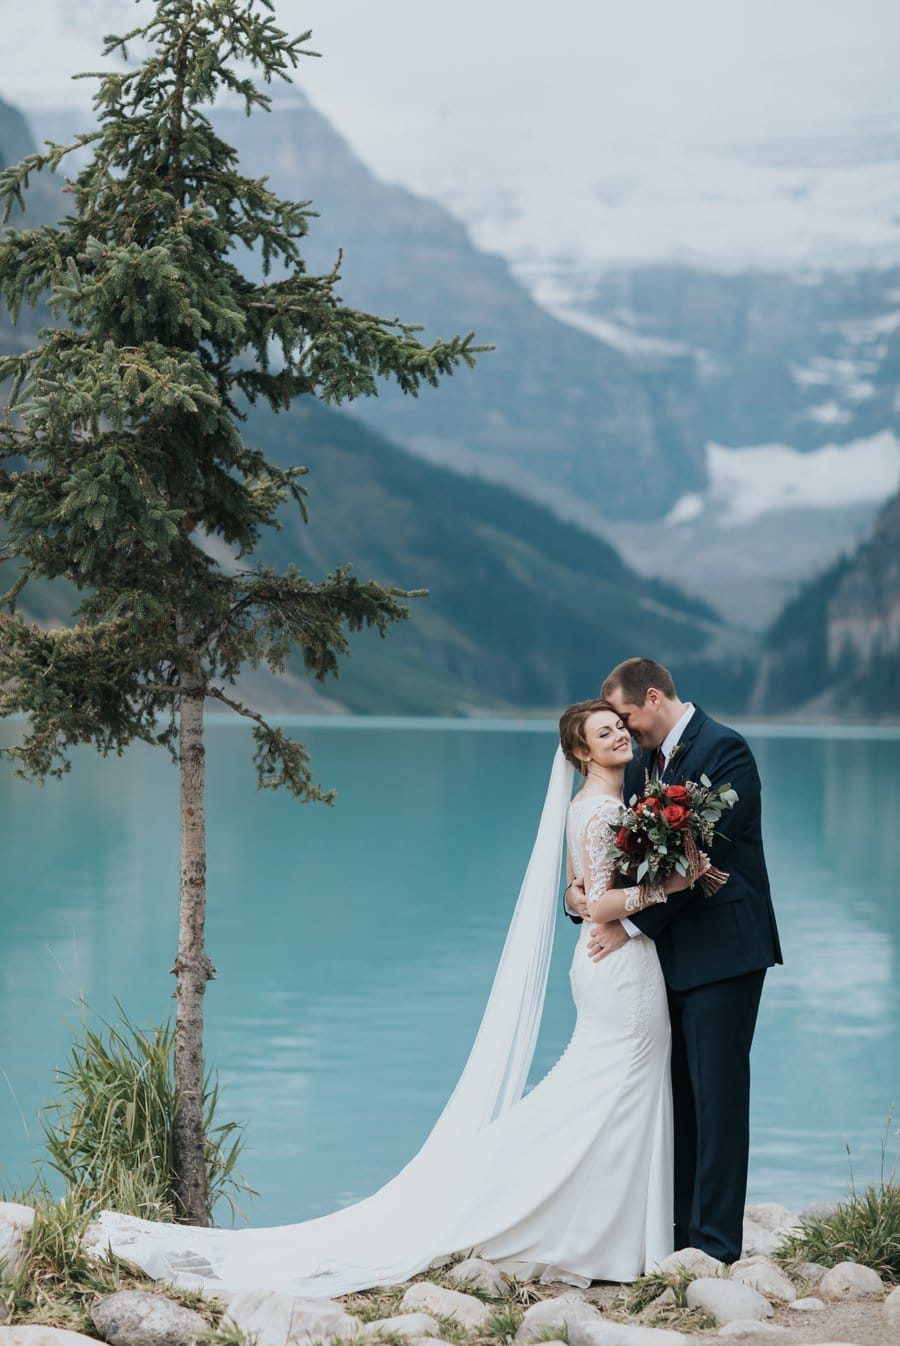 lake louise elopement wedding photos